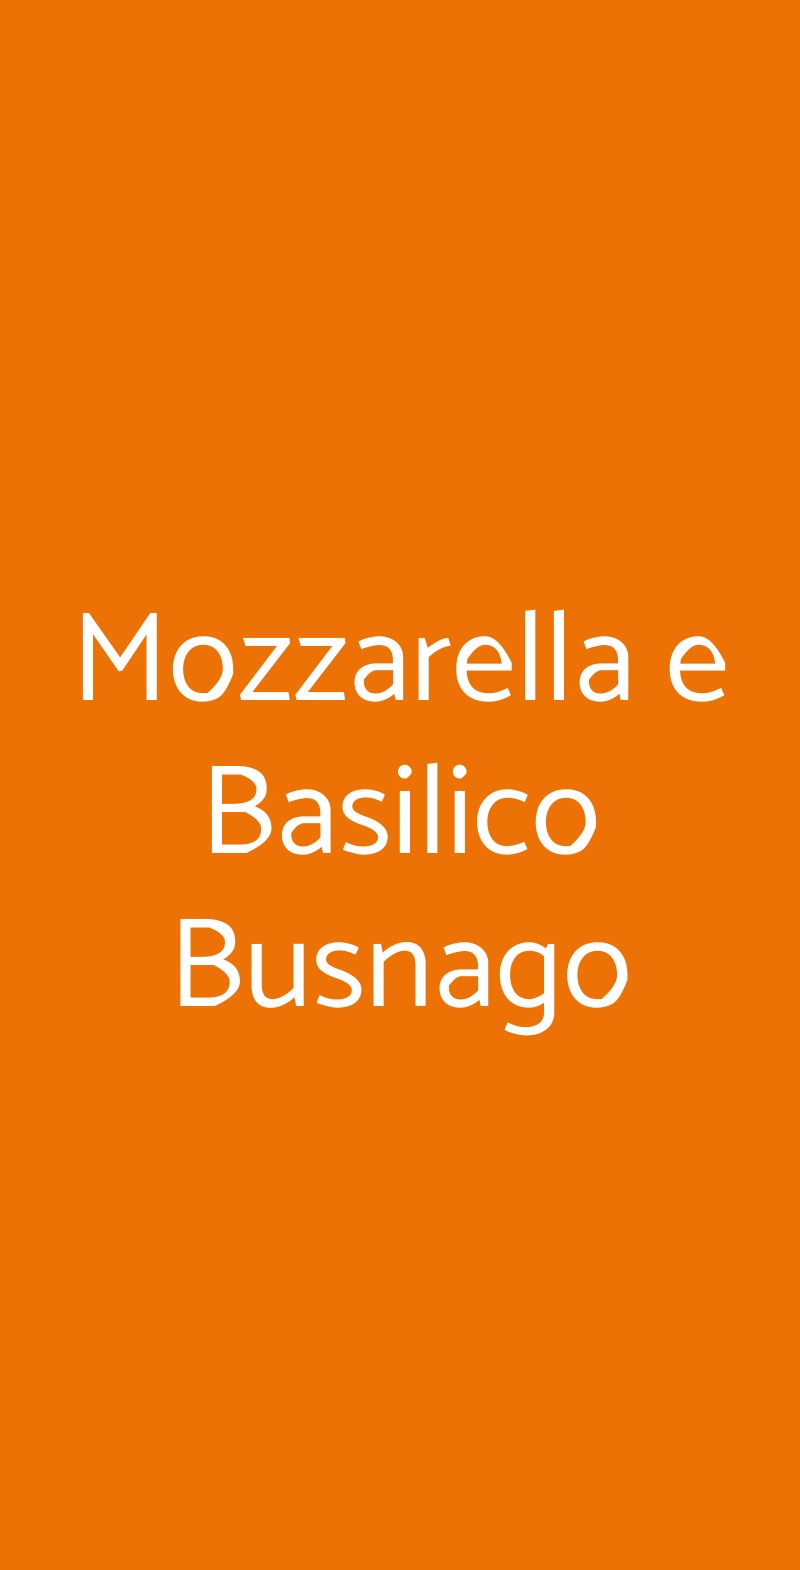 Mozzarella e Basilico Busnago Cornate d'Adda menù 1 pagina